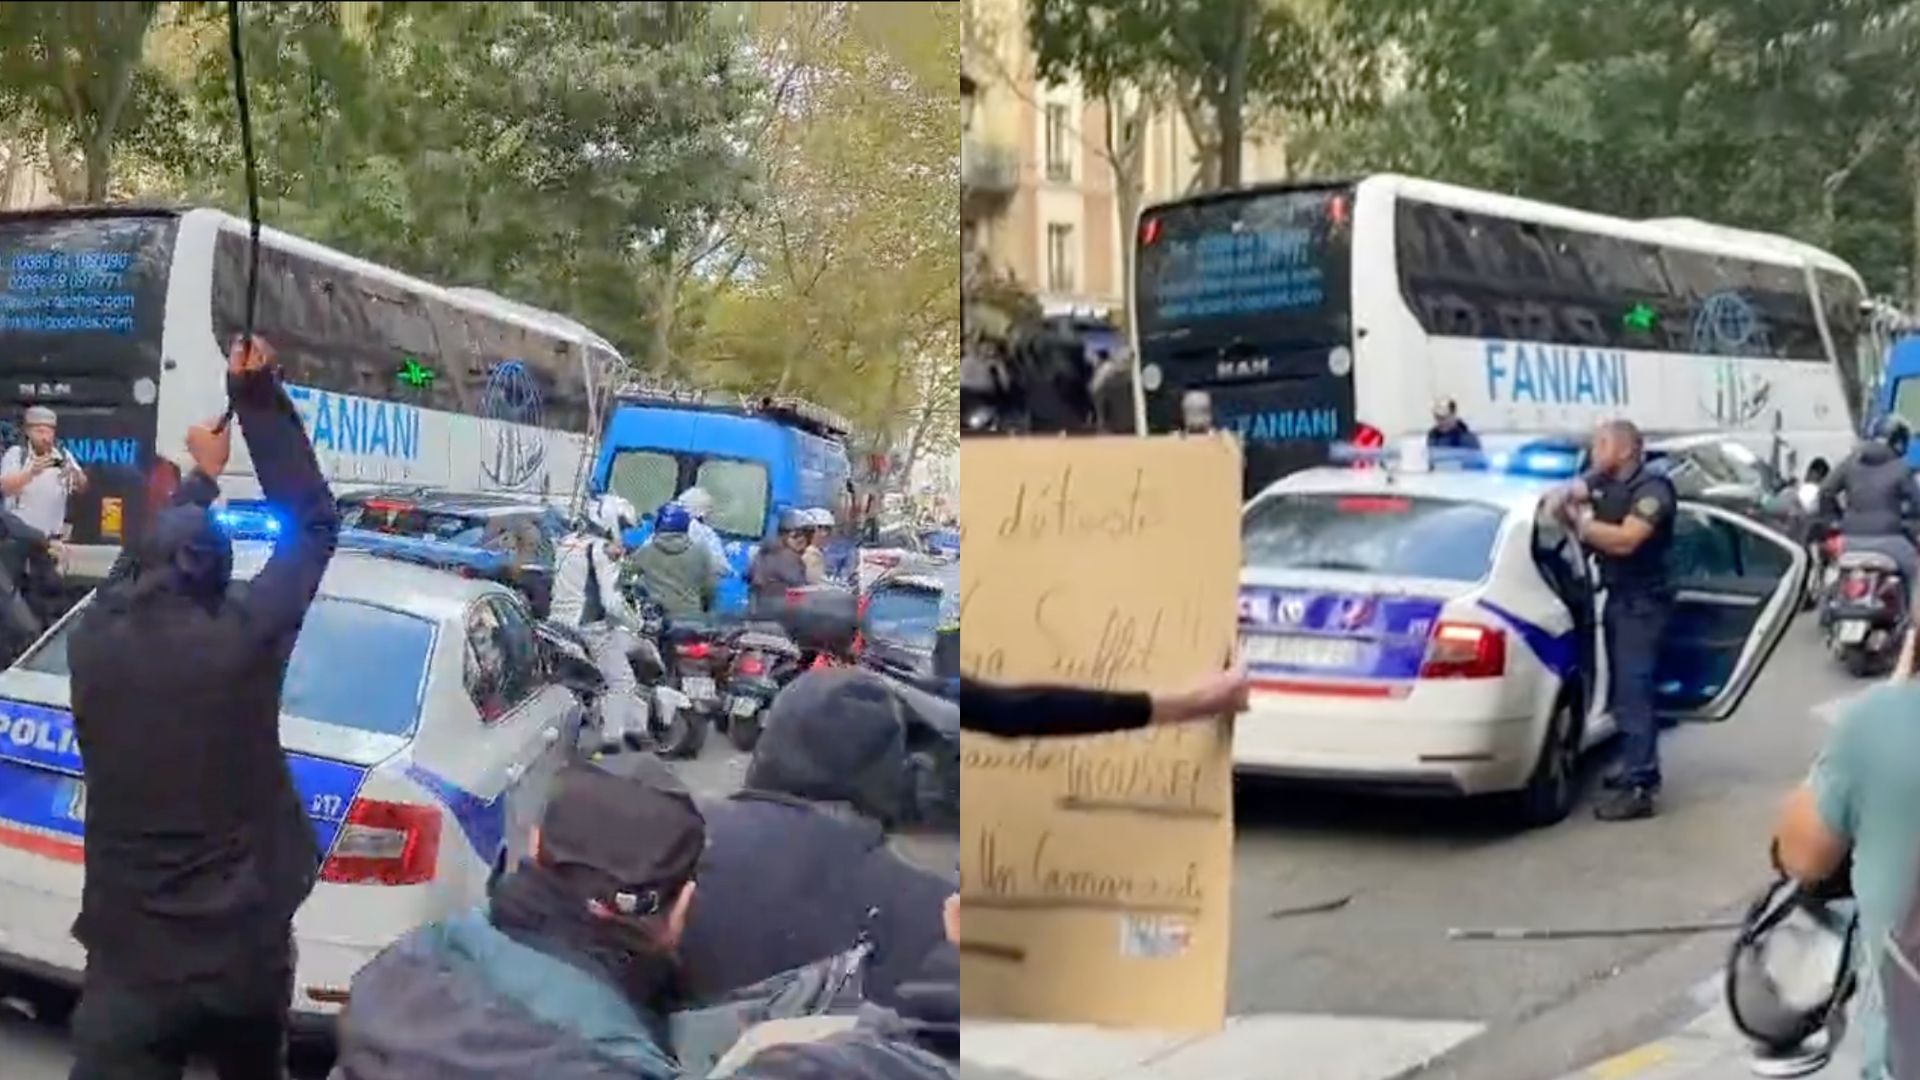 Parigi, sprangate sulla volante bloccata nel traffico durante la manifestazione contro la polizia: agente estrae la pistola – I video